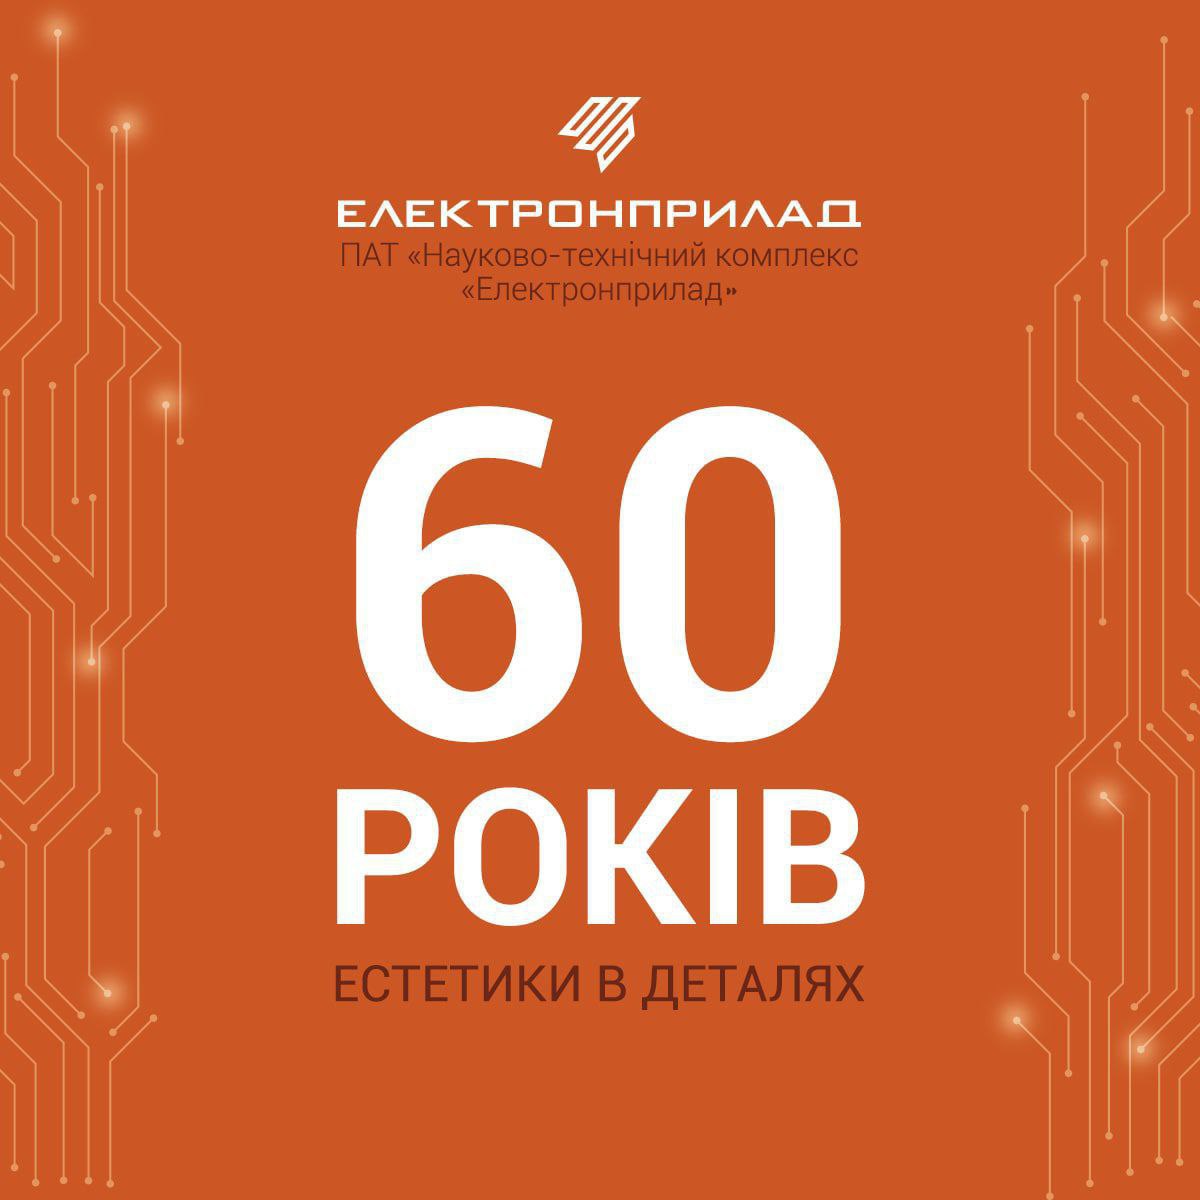 ПАТ НТК «Електронприлад» сьогодні 60 років з дня заснування!!!  